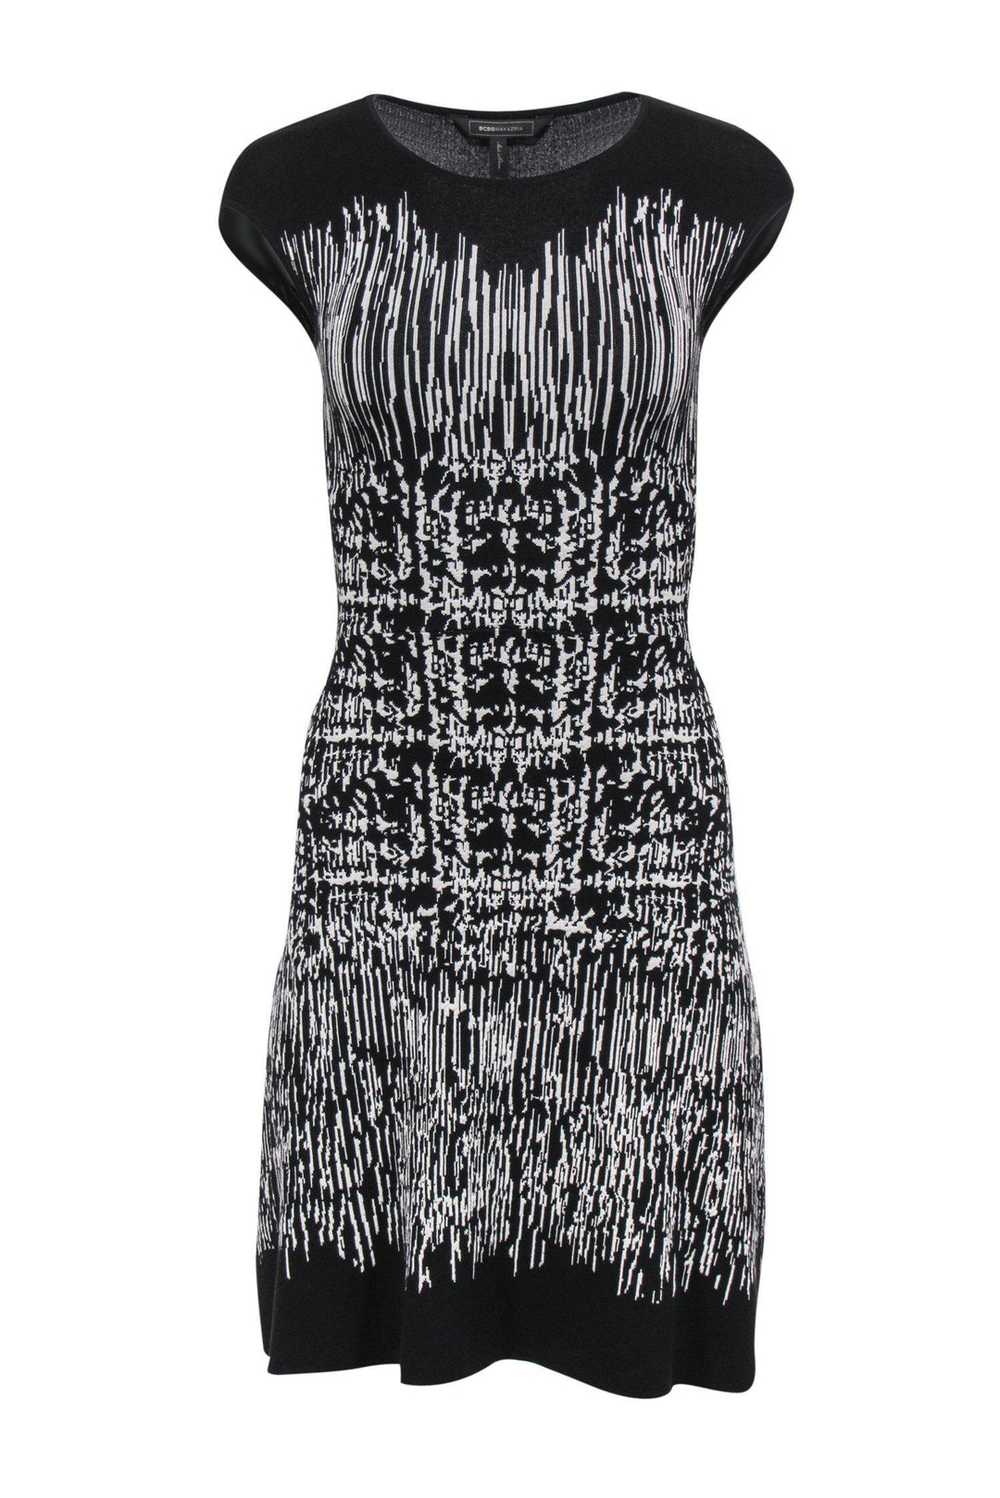 BCBG Max Azria - Black & White Striped Knit Dress… - image 1